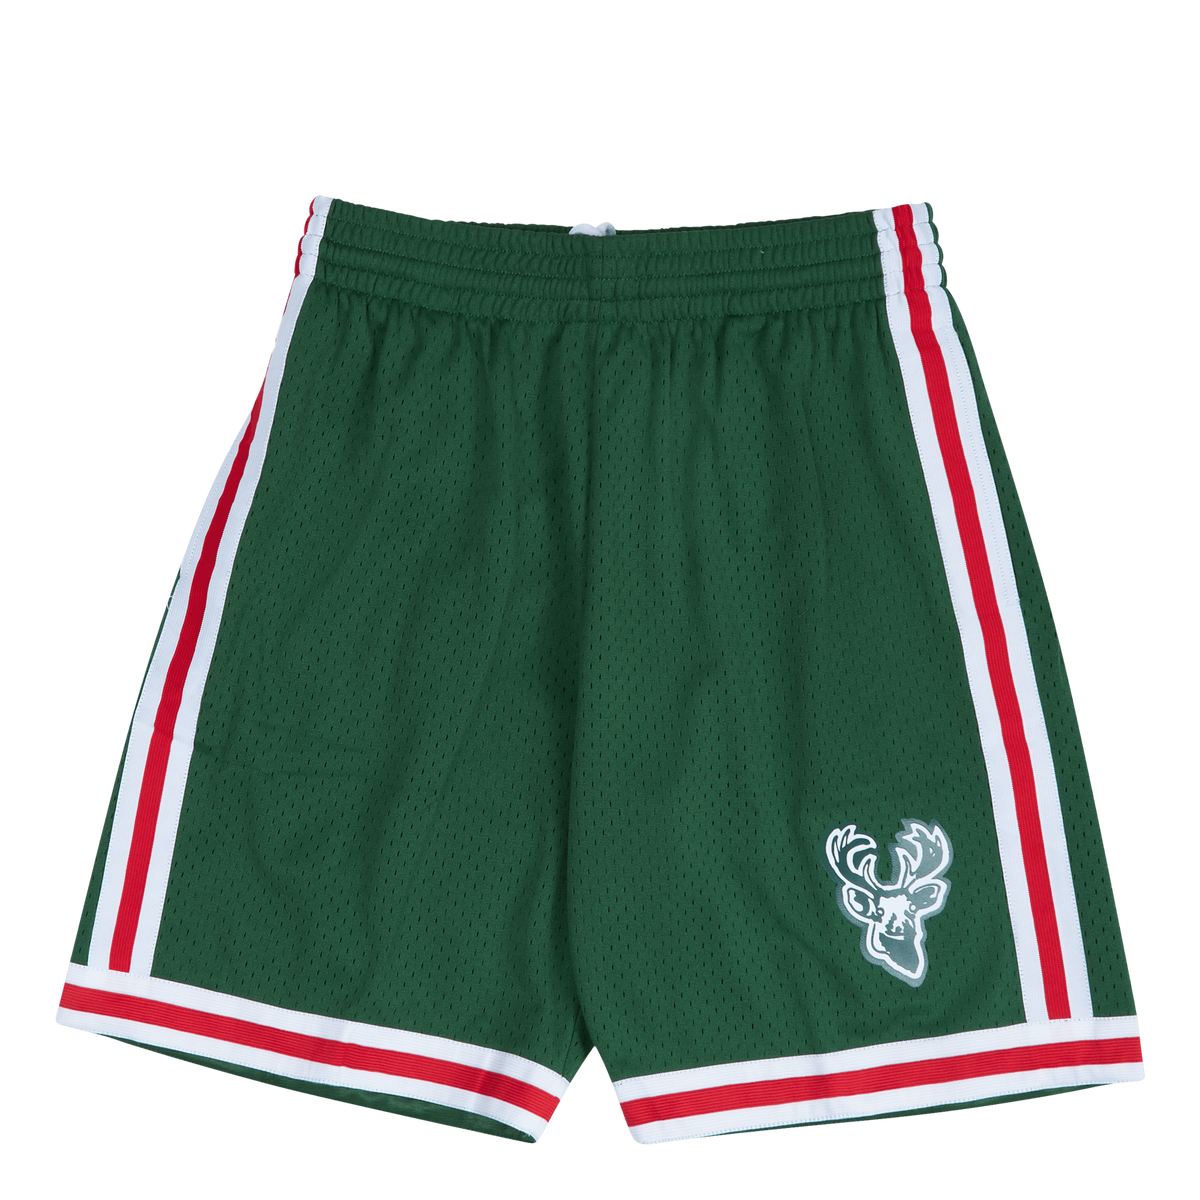 Bucks Swingman Shorts 71-72